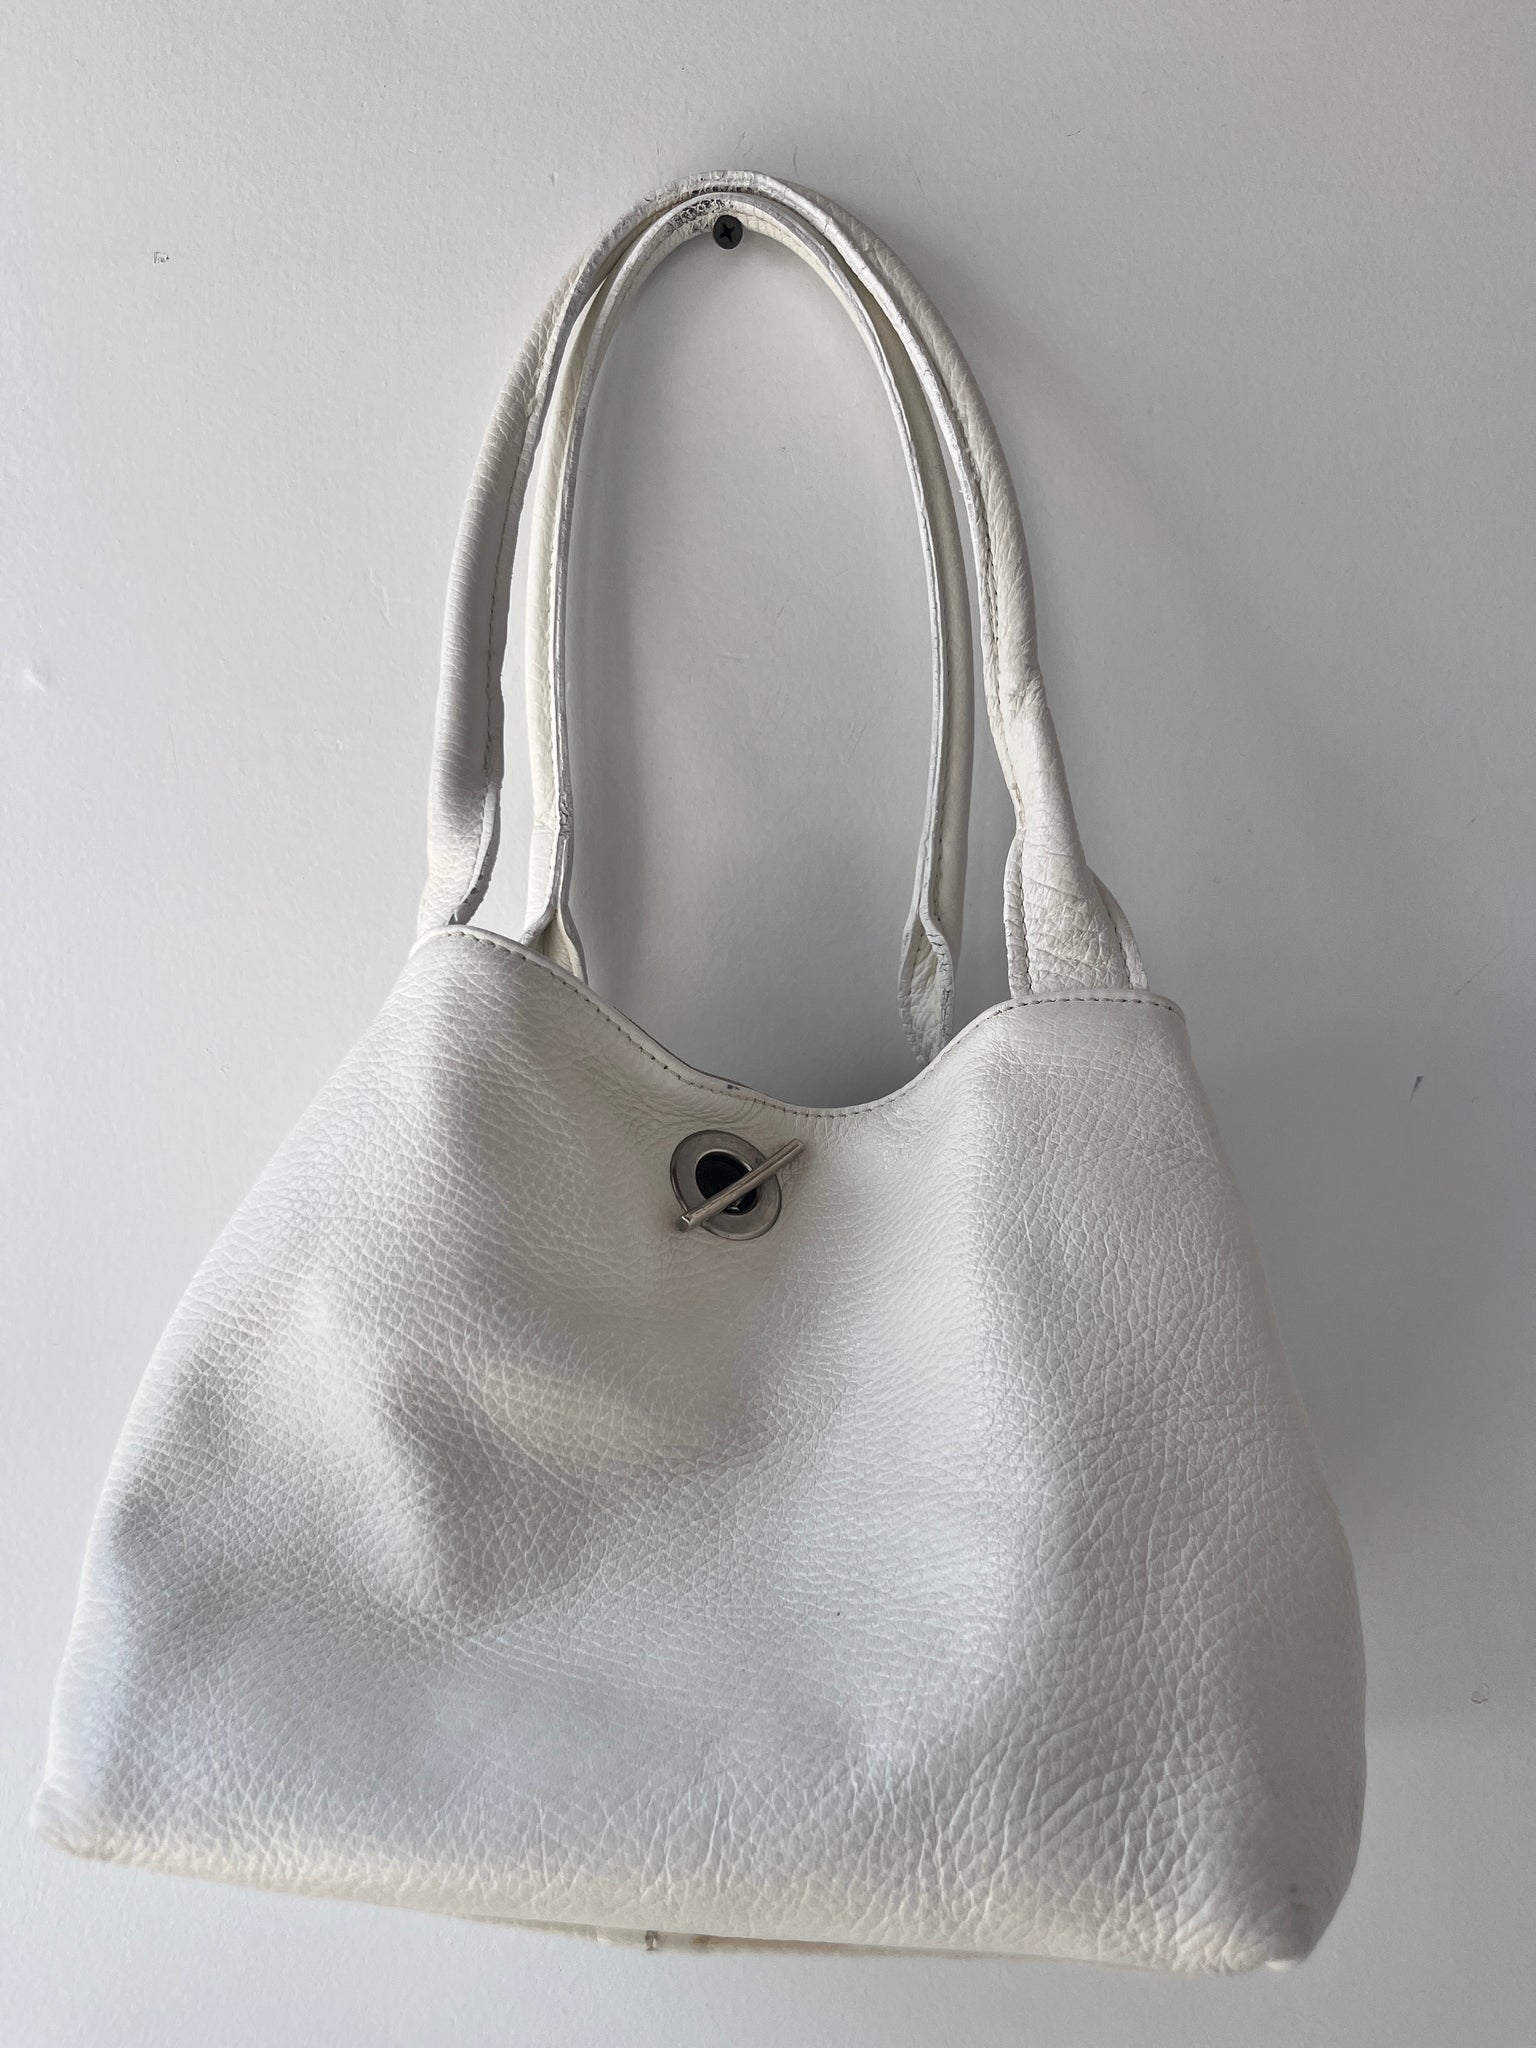 White leather toggle bag